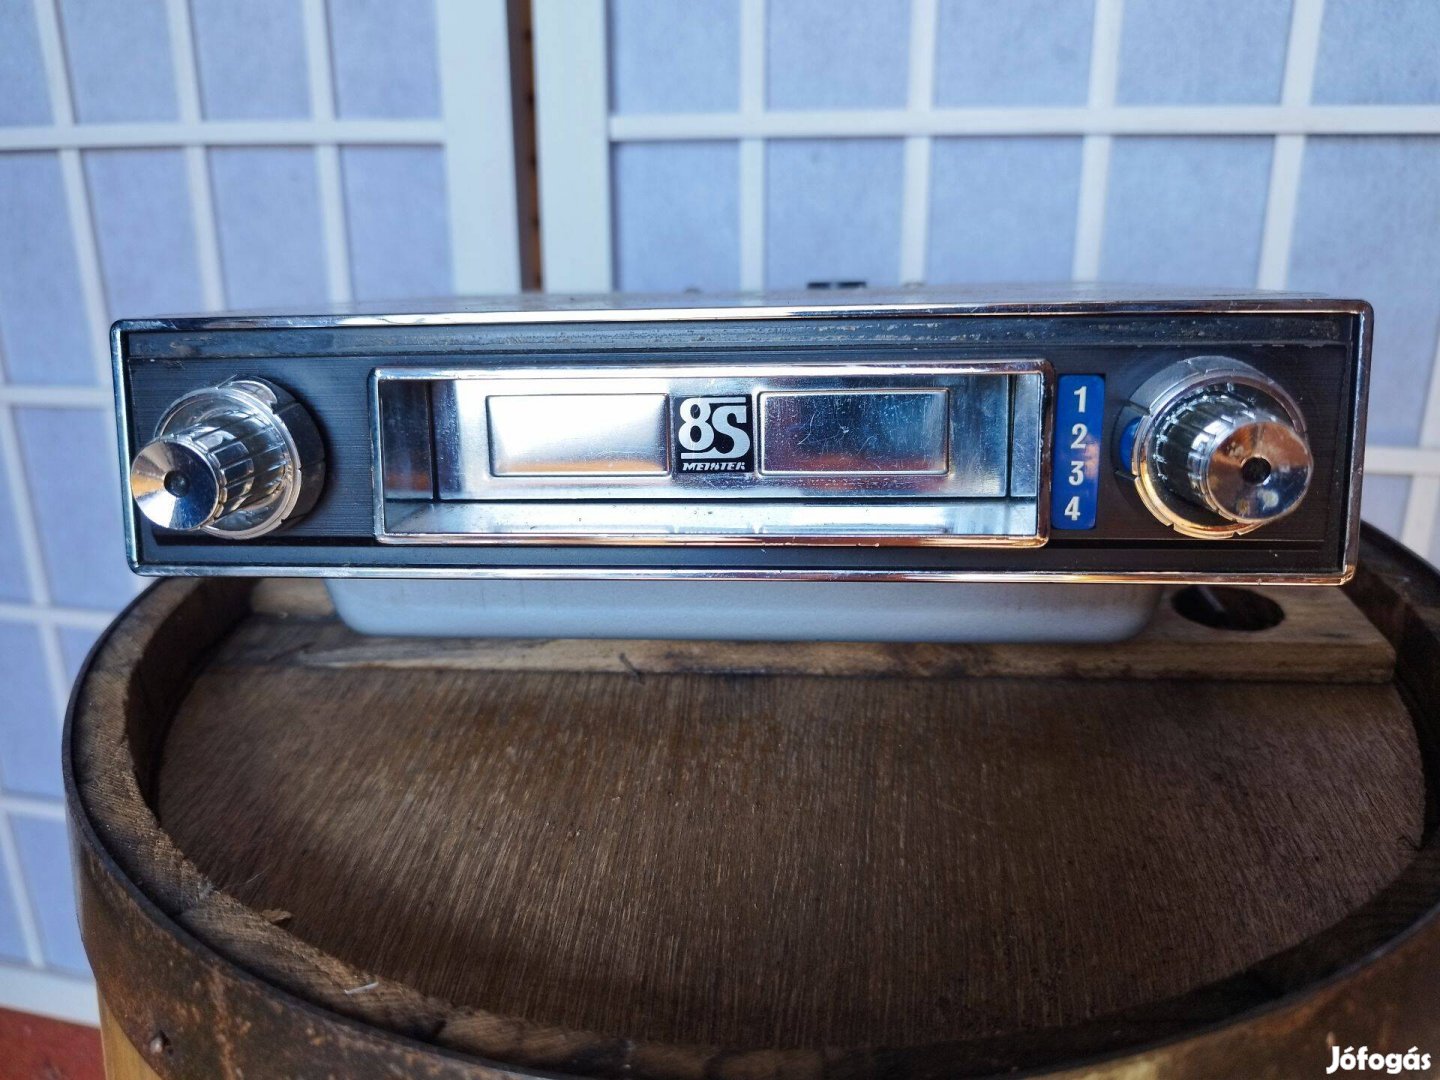 Retró kazettás autós fejegység -cartridge 8s meister stereo car player